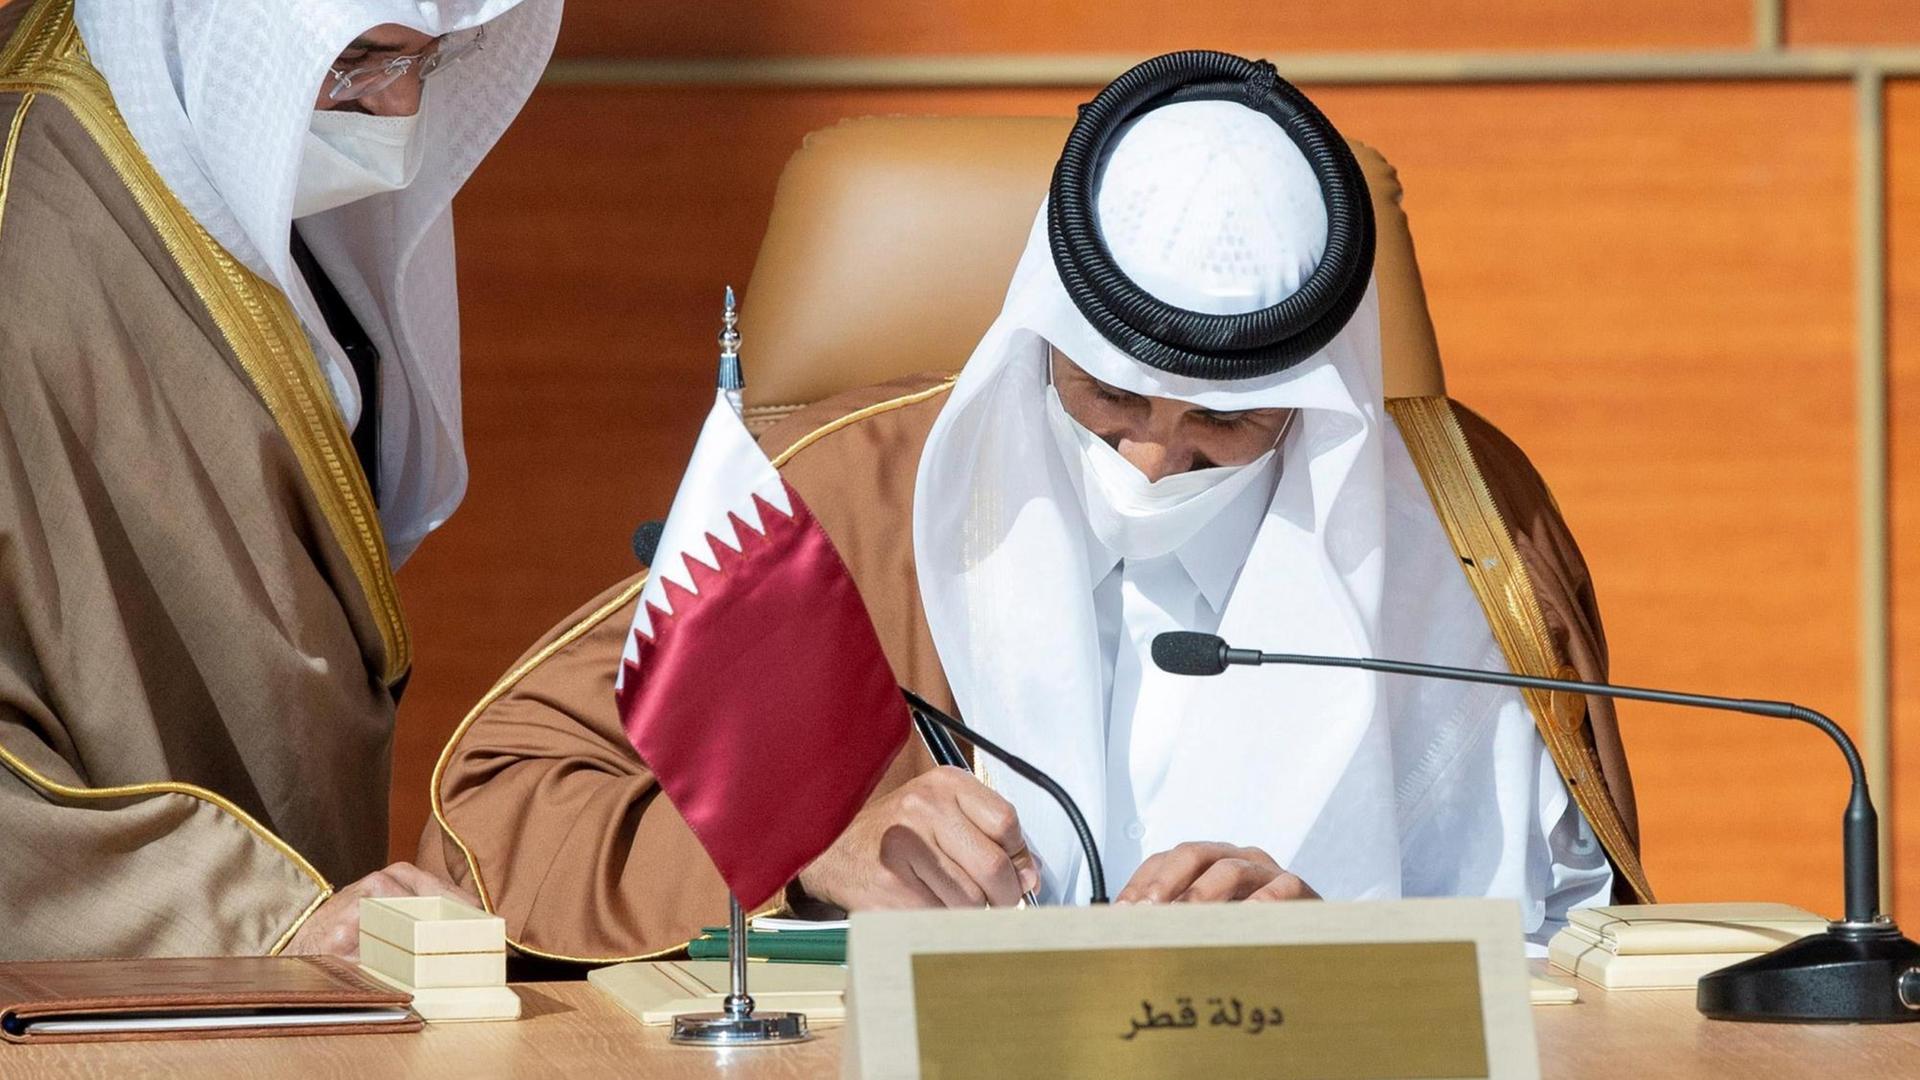 Das Foto zeigt den Emir von Katar, der einen Vertrag unterschreibt.